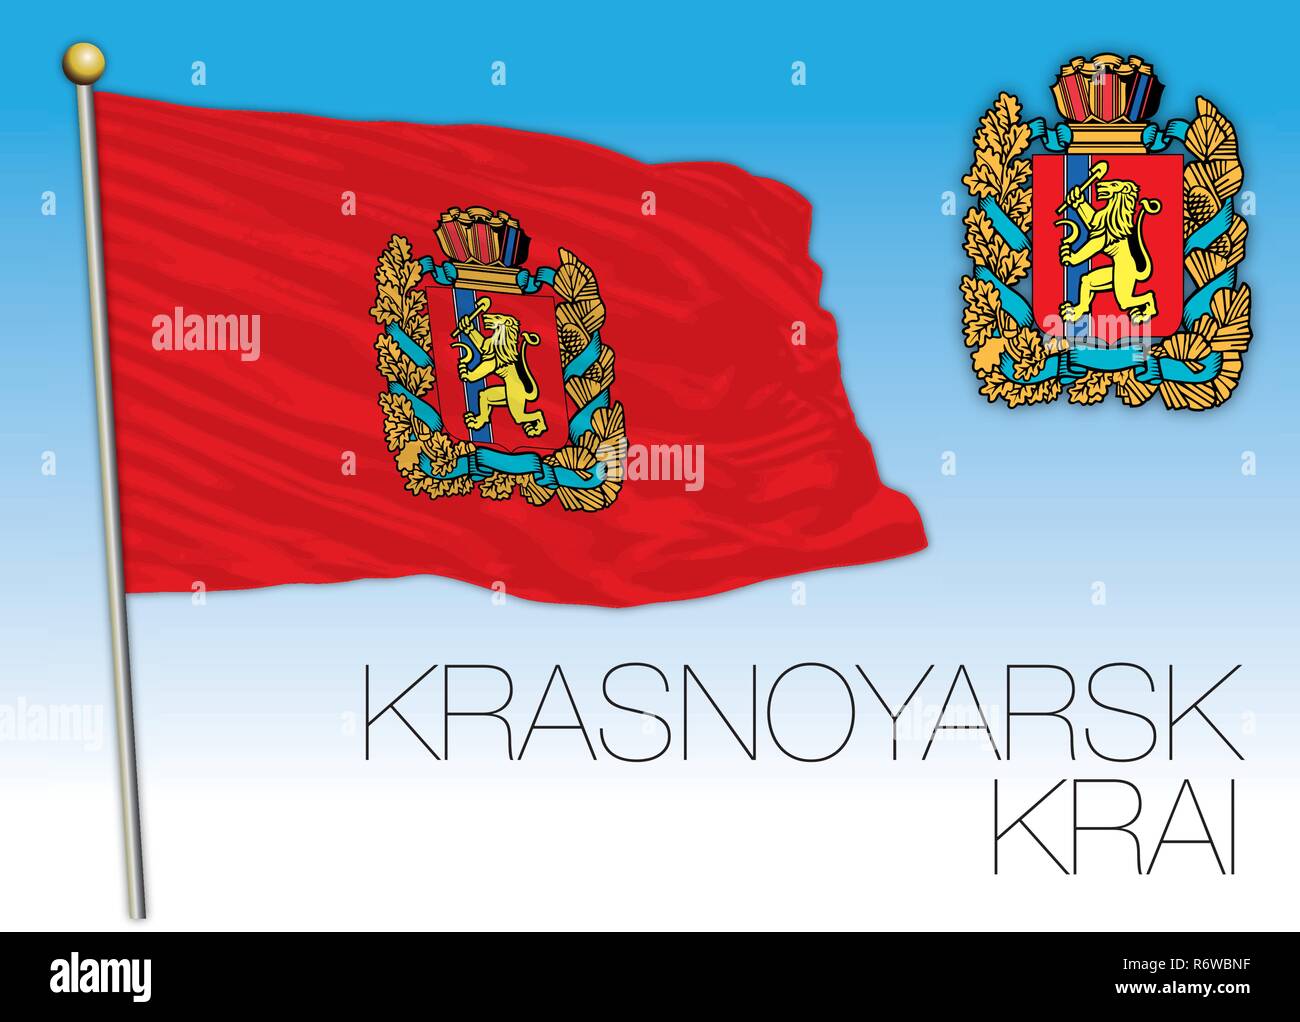 Krasnoyarsk Krai flag, Russian Federation, vector illustration Stock Vector